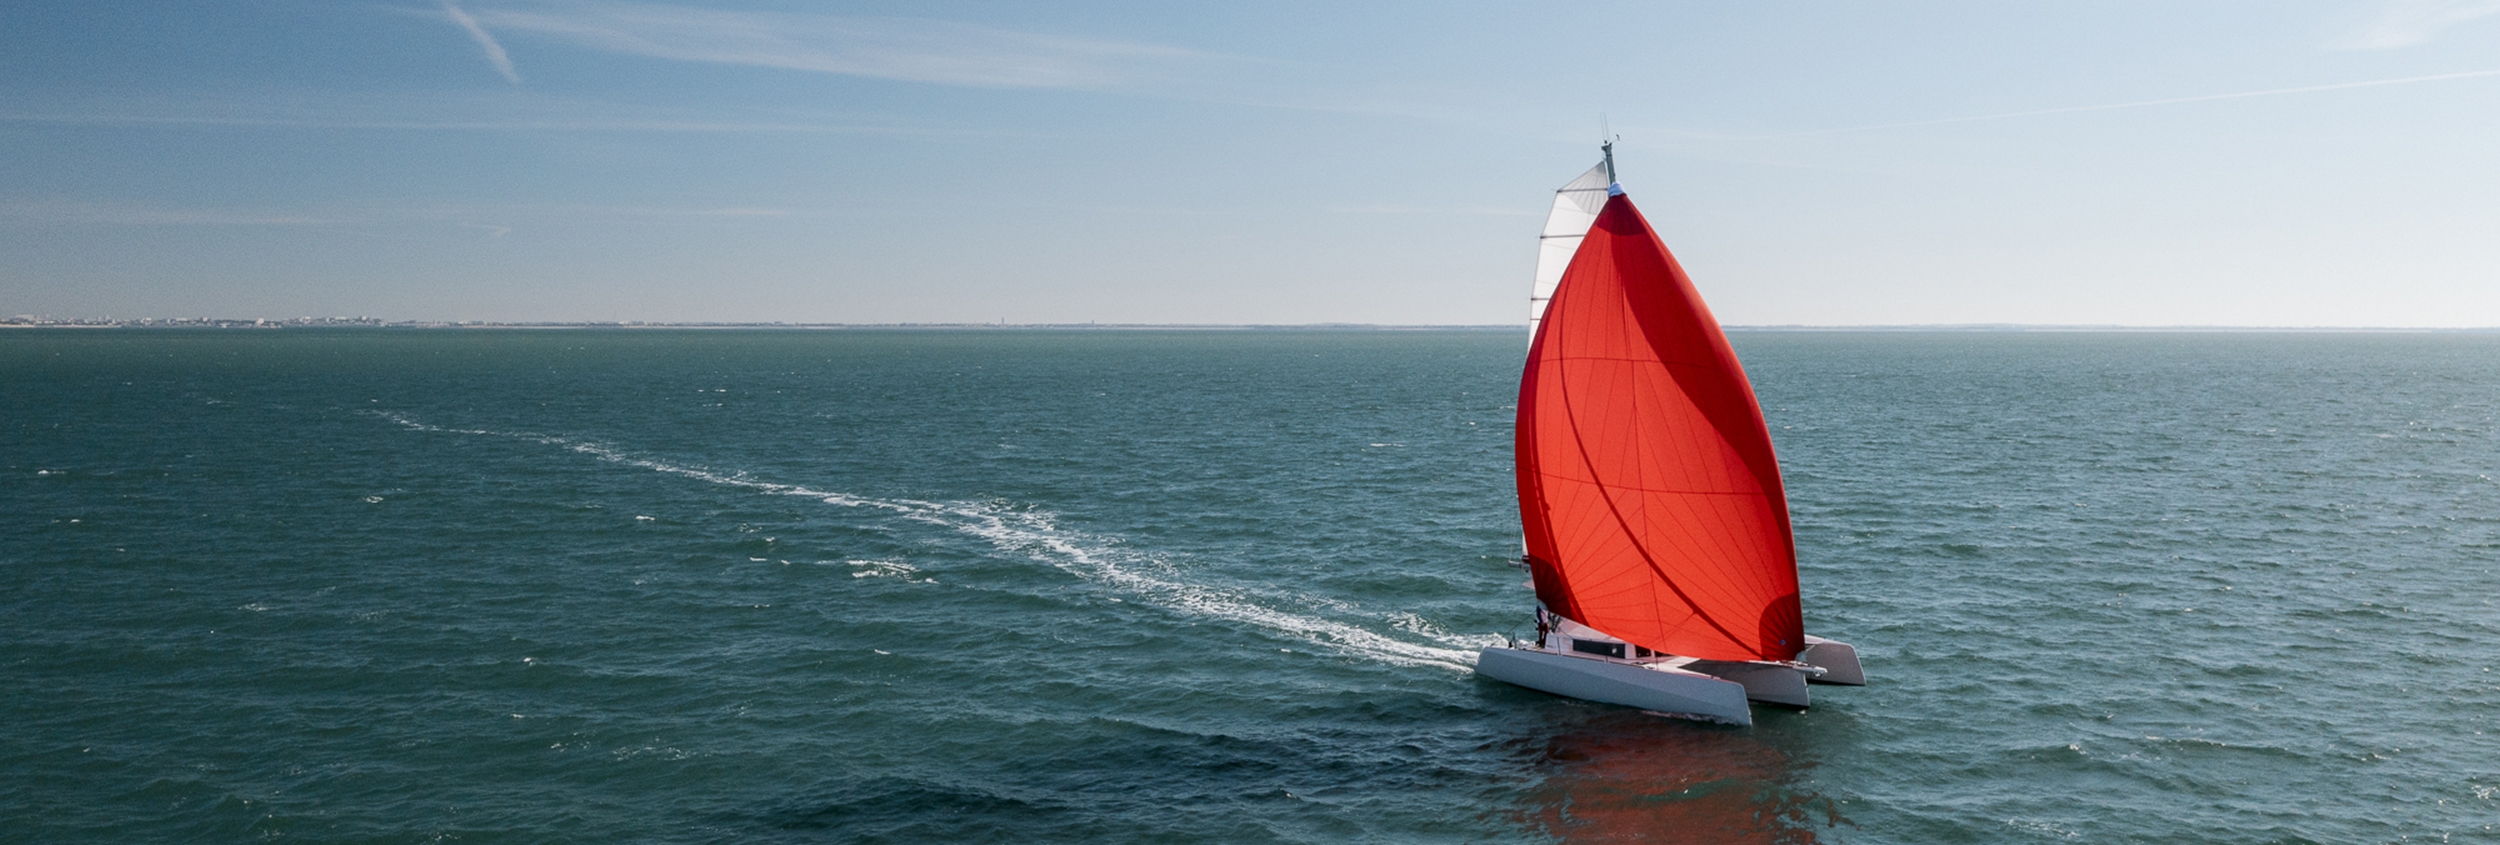 Yacht mit roten Segel